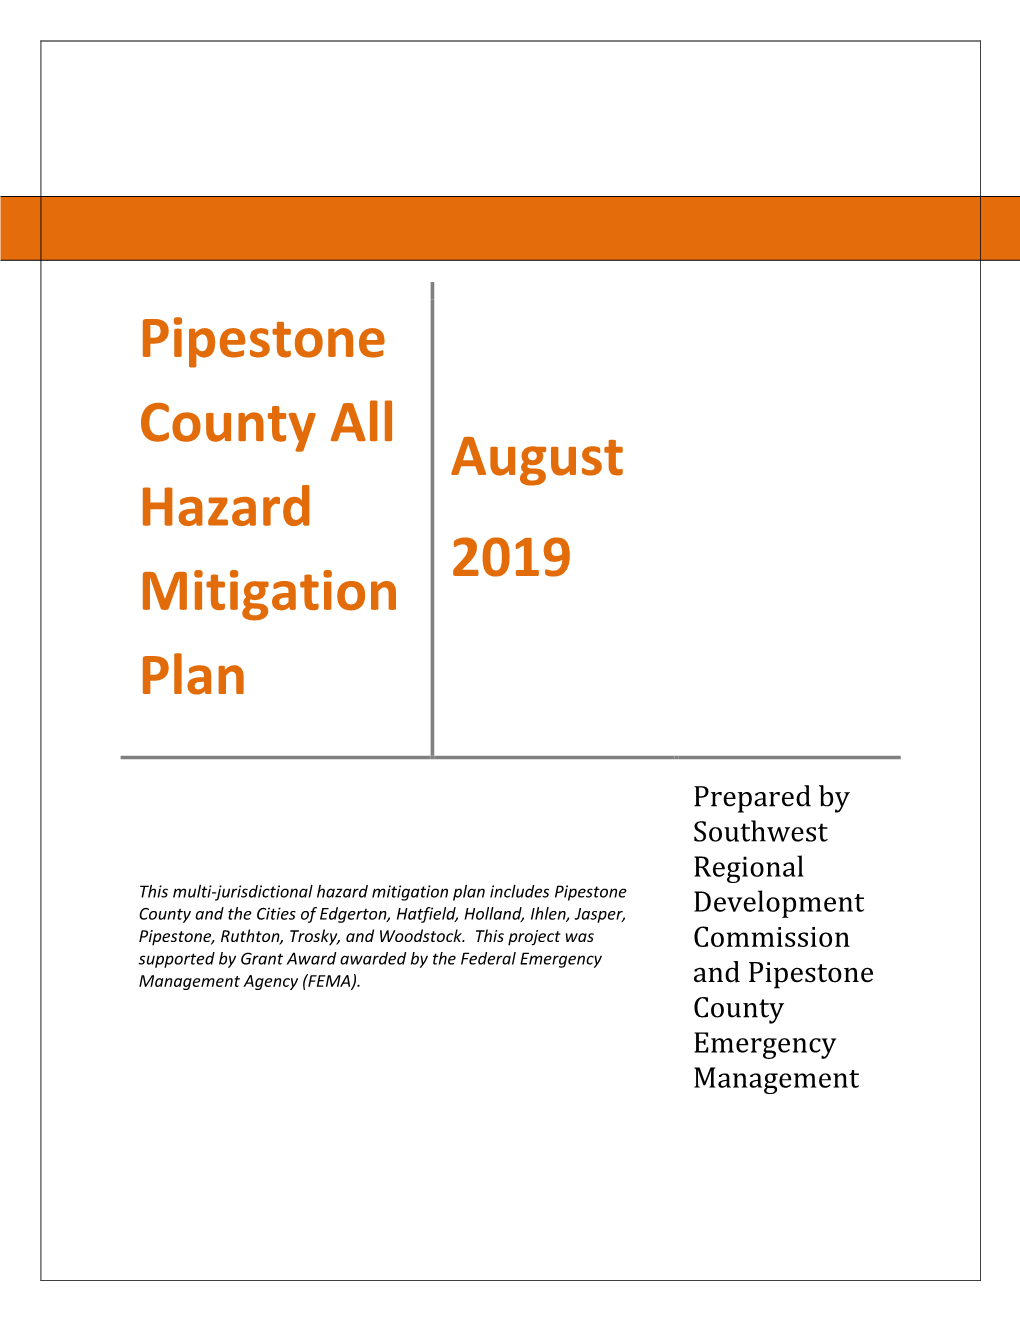 Pipestone County All Hazard Mitigation Plan August 2019